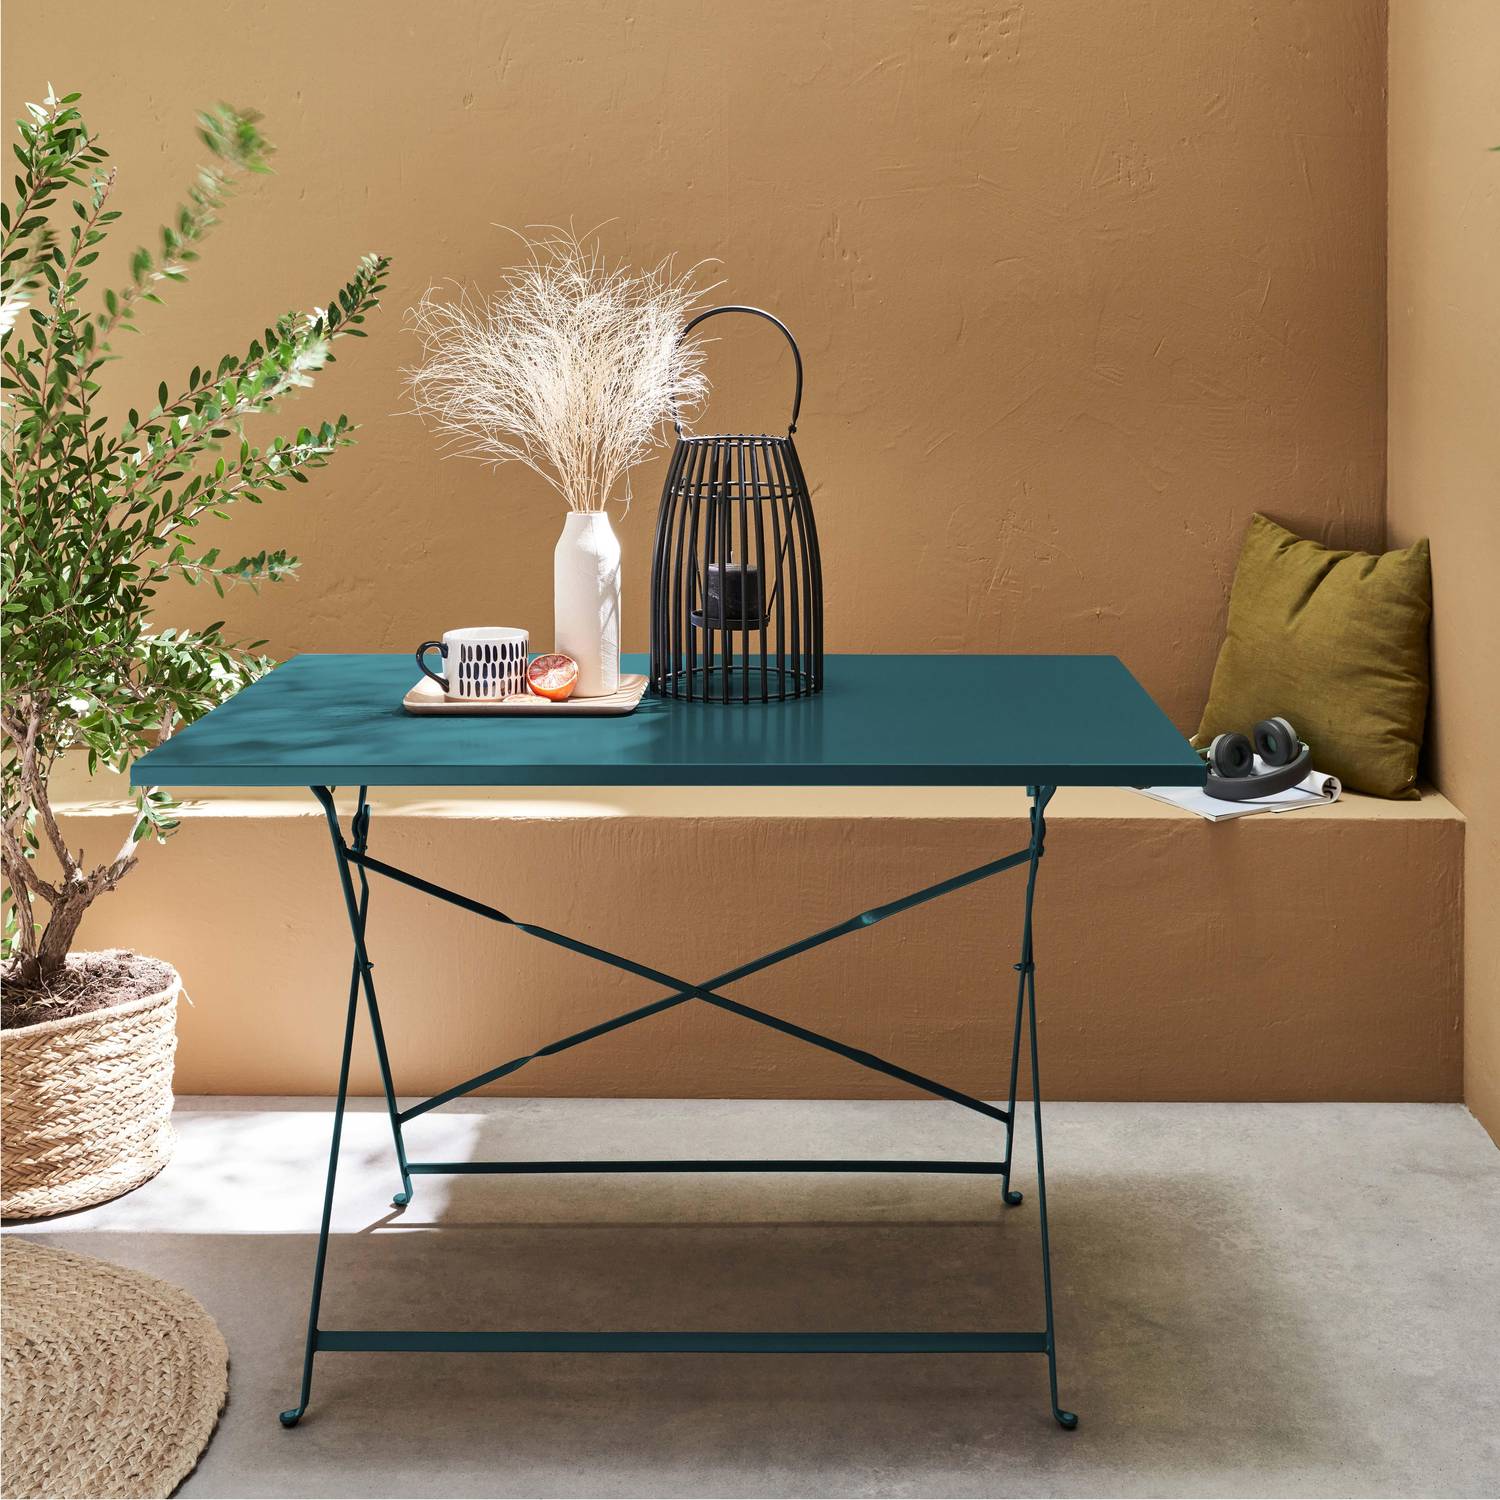 Table de jardin bistrot pliable - Emilia rectangle bleu canard- Table rectangle 110x70cm en acier thermolaqué Photo1